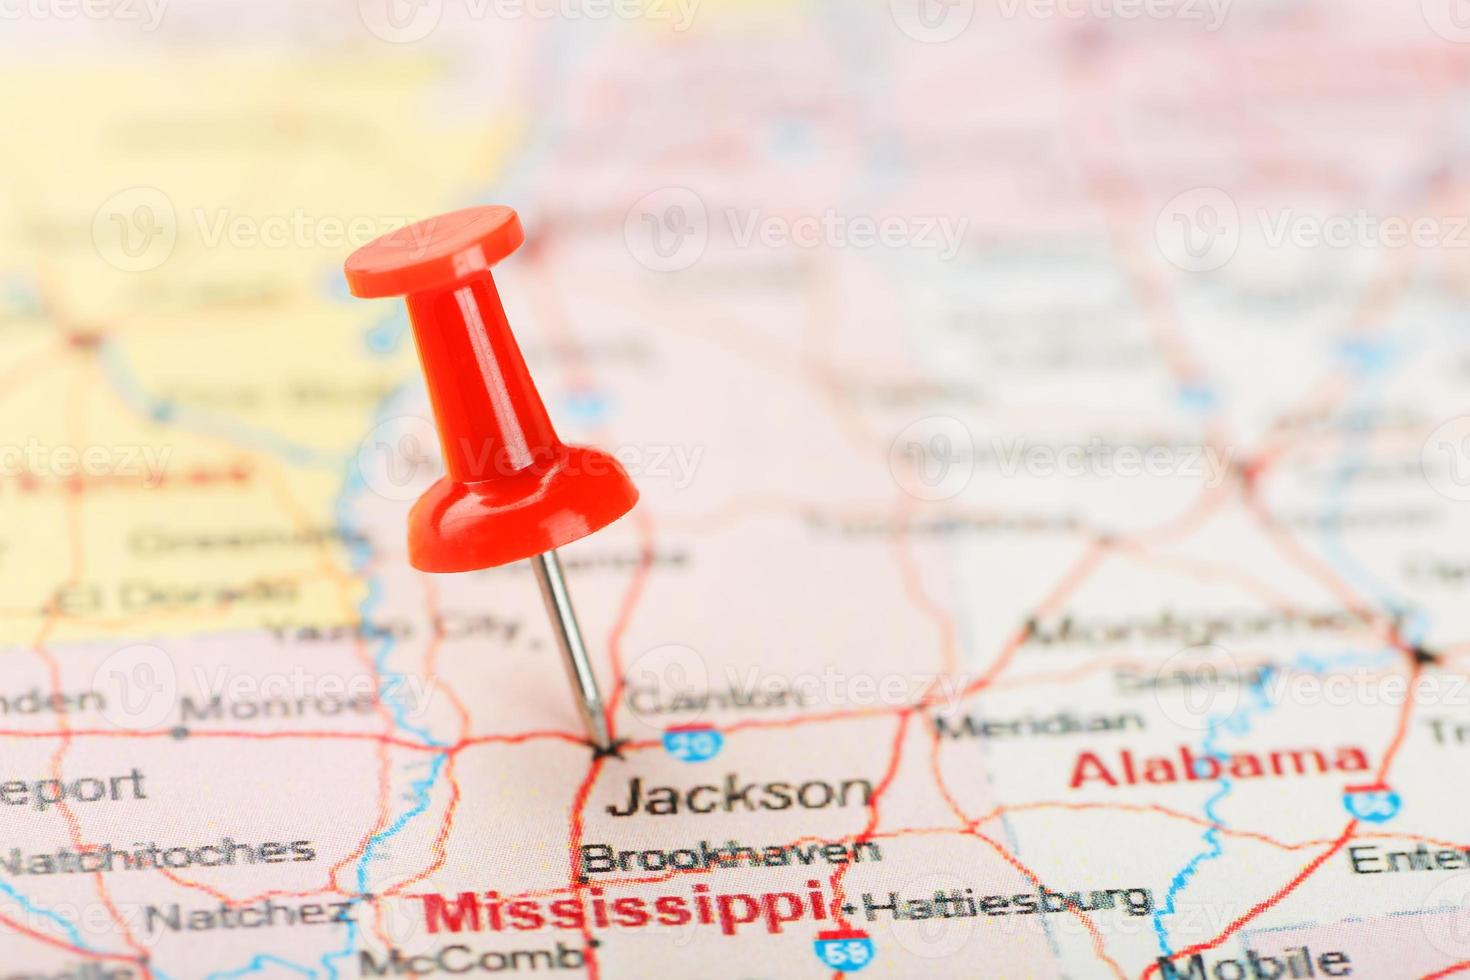 aguja clerical roja en un mapa de estados unidos, el sur de mississippi y la capital jackson. Cerrar mapa del sur de Mississippi con tachuela roja foto